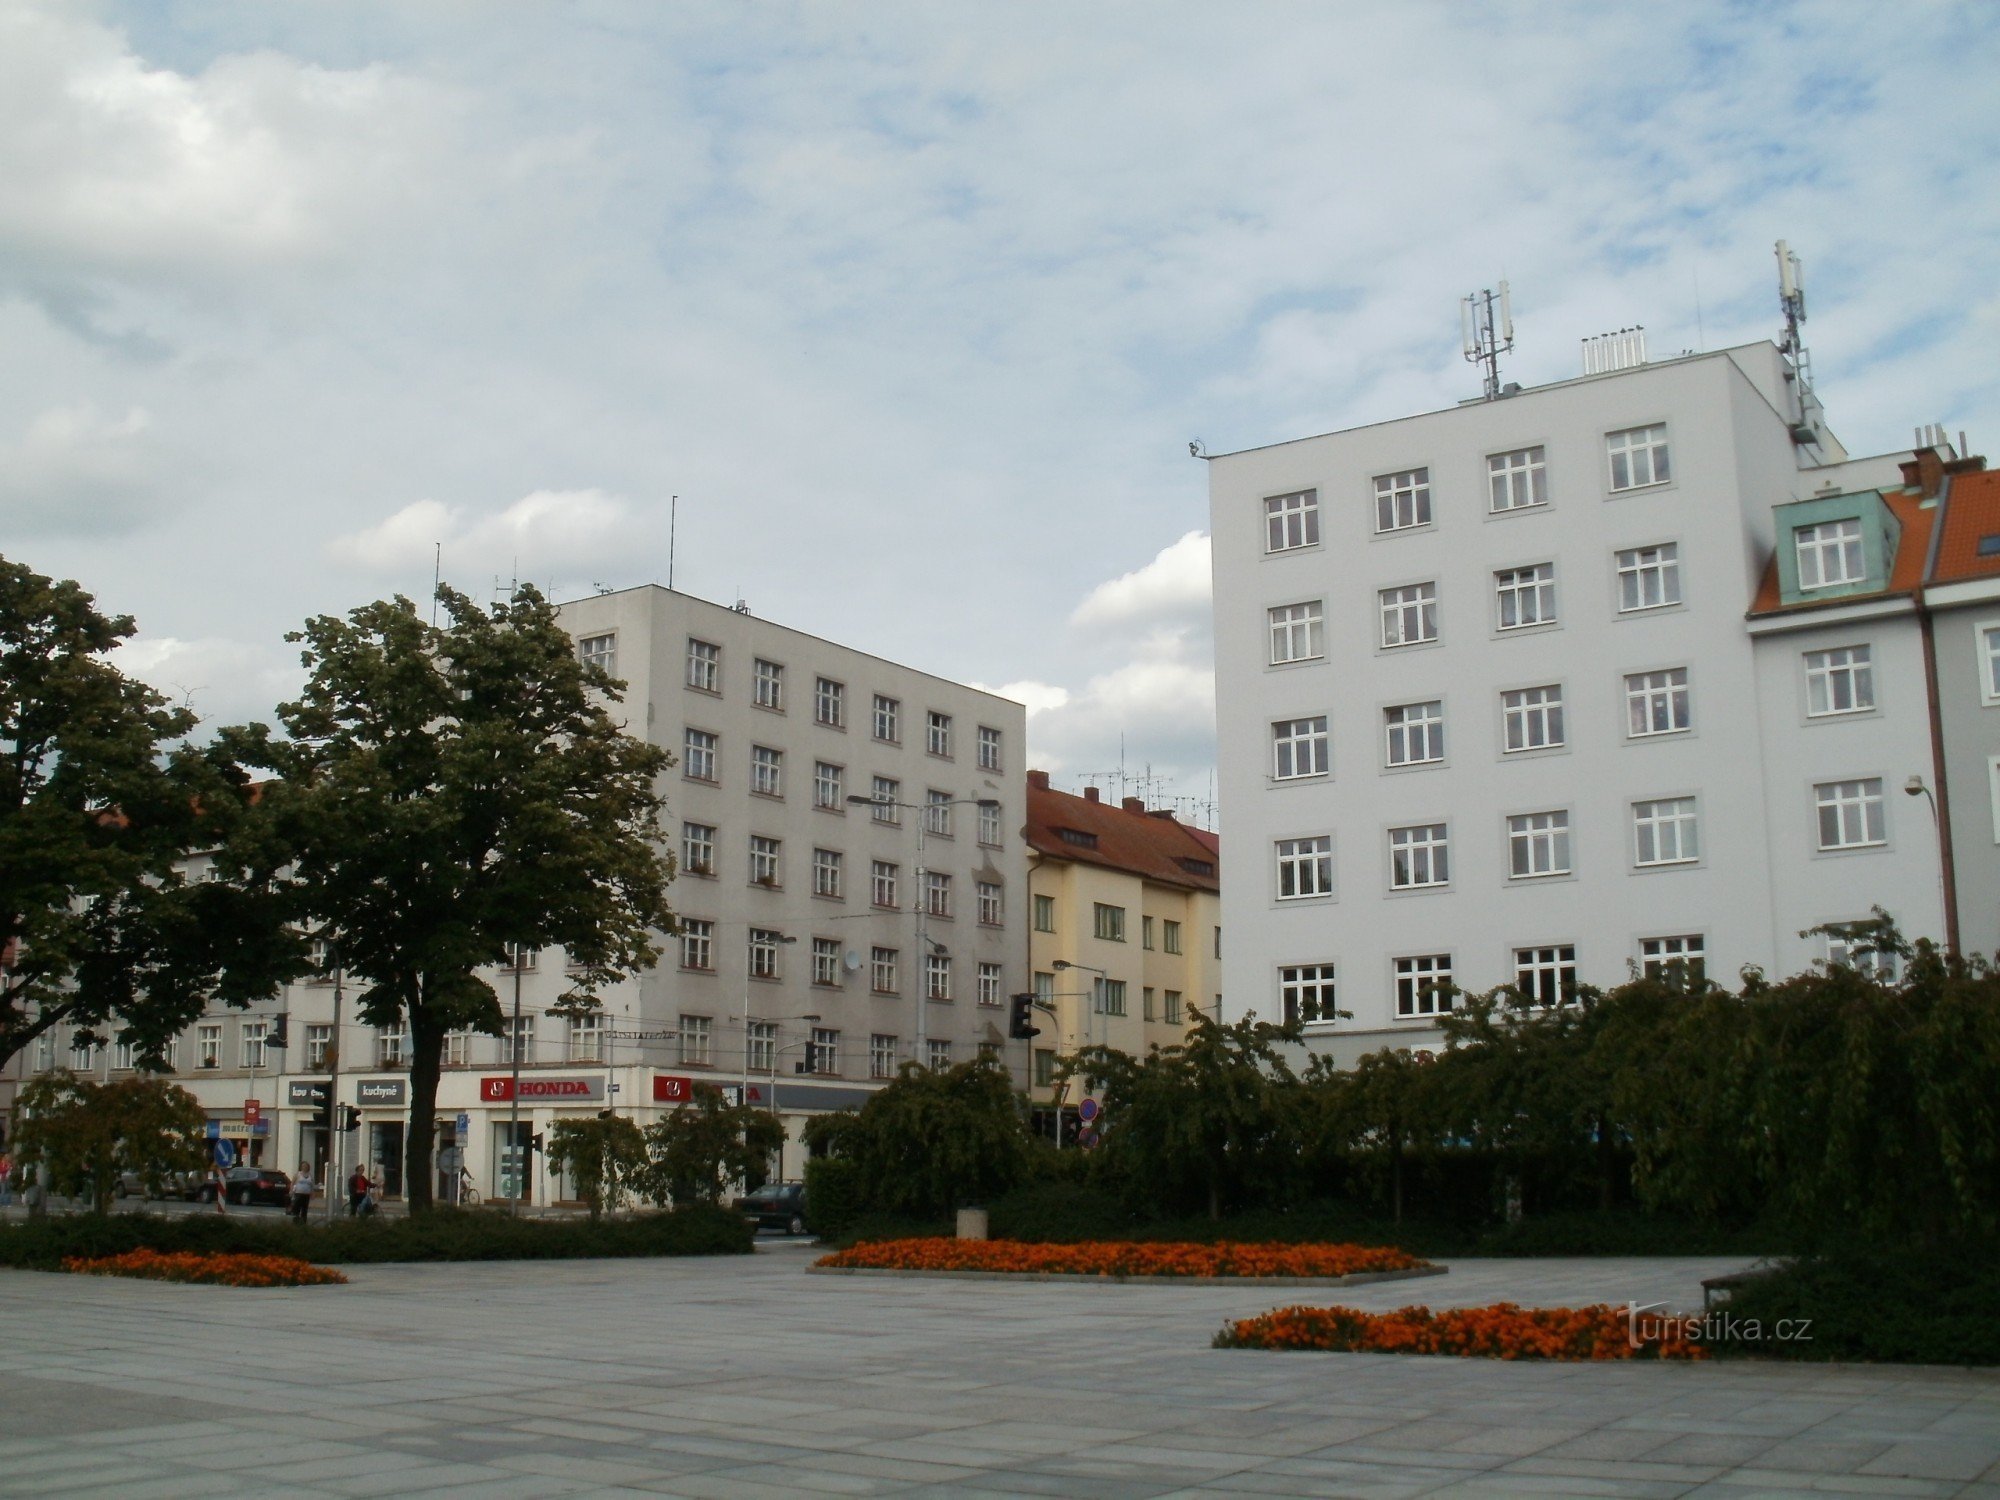 Hradec Králové - Piața lui Ulrich